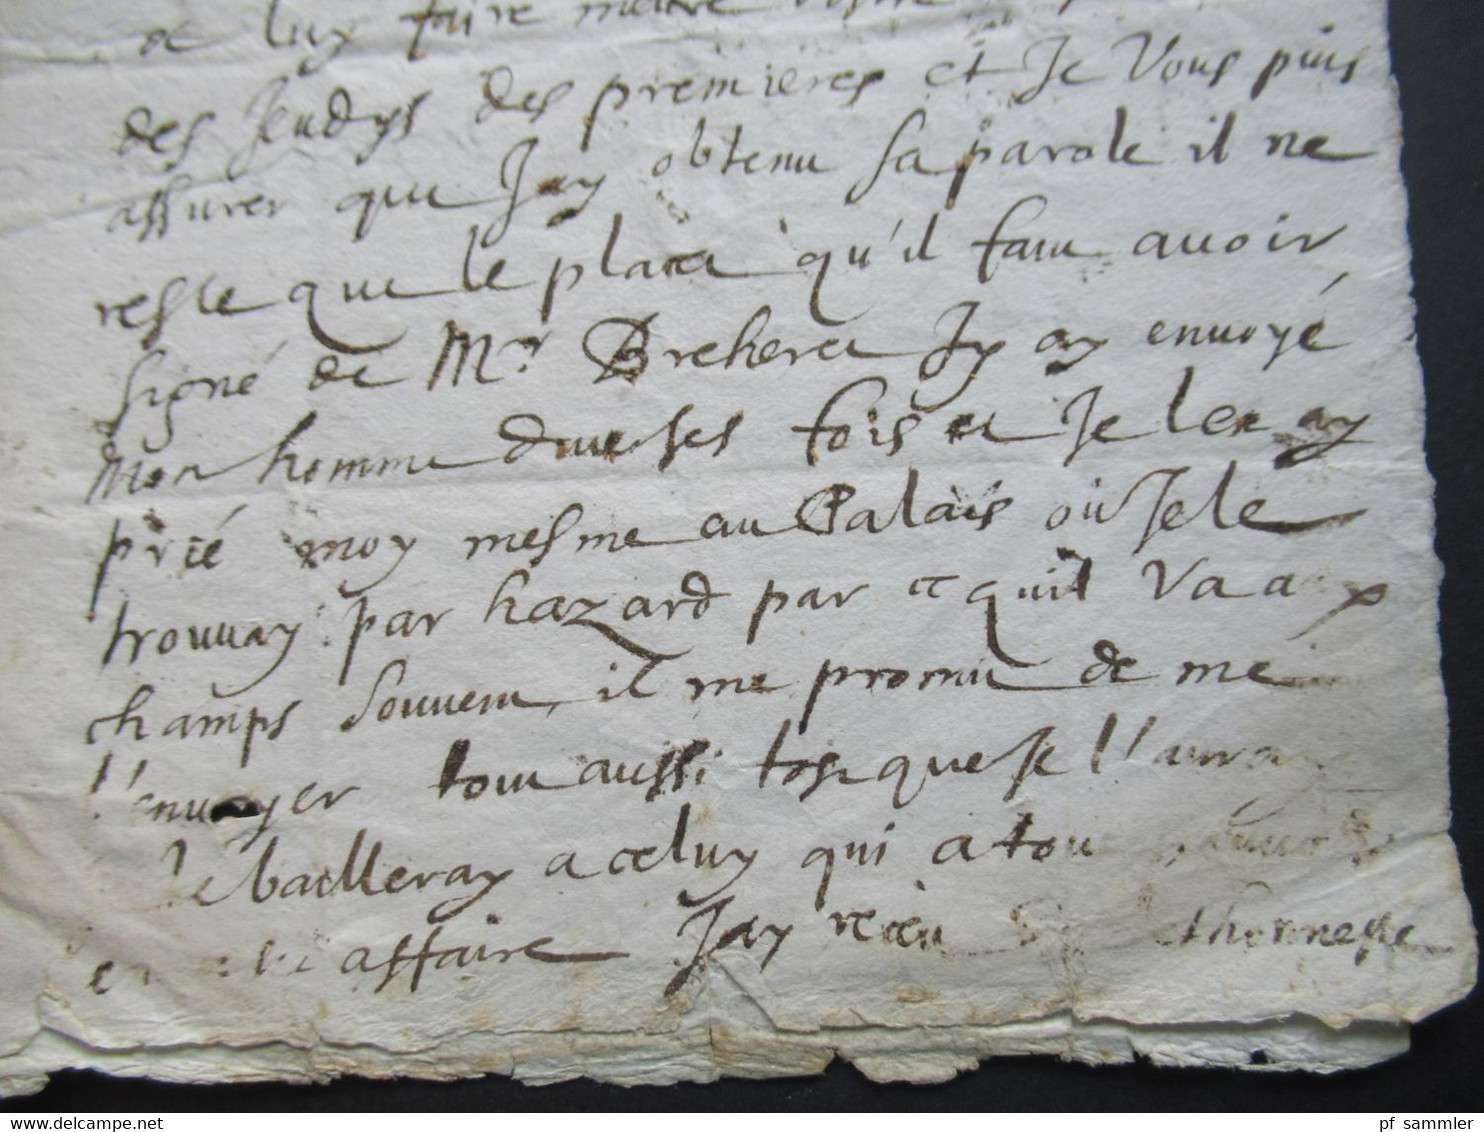 Paris - Beaufort an den Notaire Faltbrief mit Inhalt / lettre aus dem Jahre 1646 / Datum 20.10.1646 Zeit von Ludwig XIV